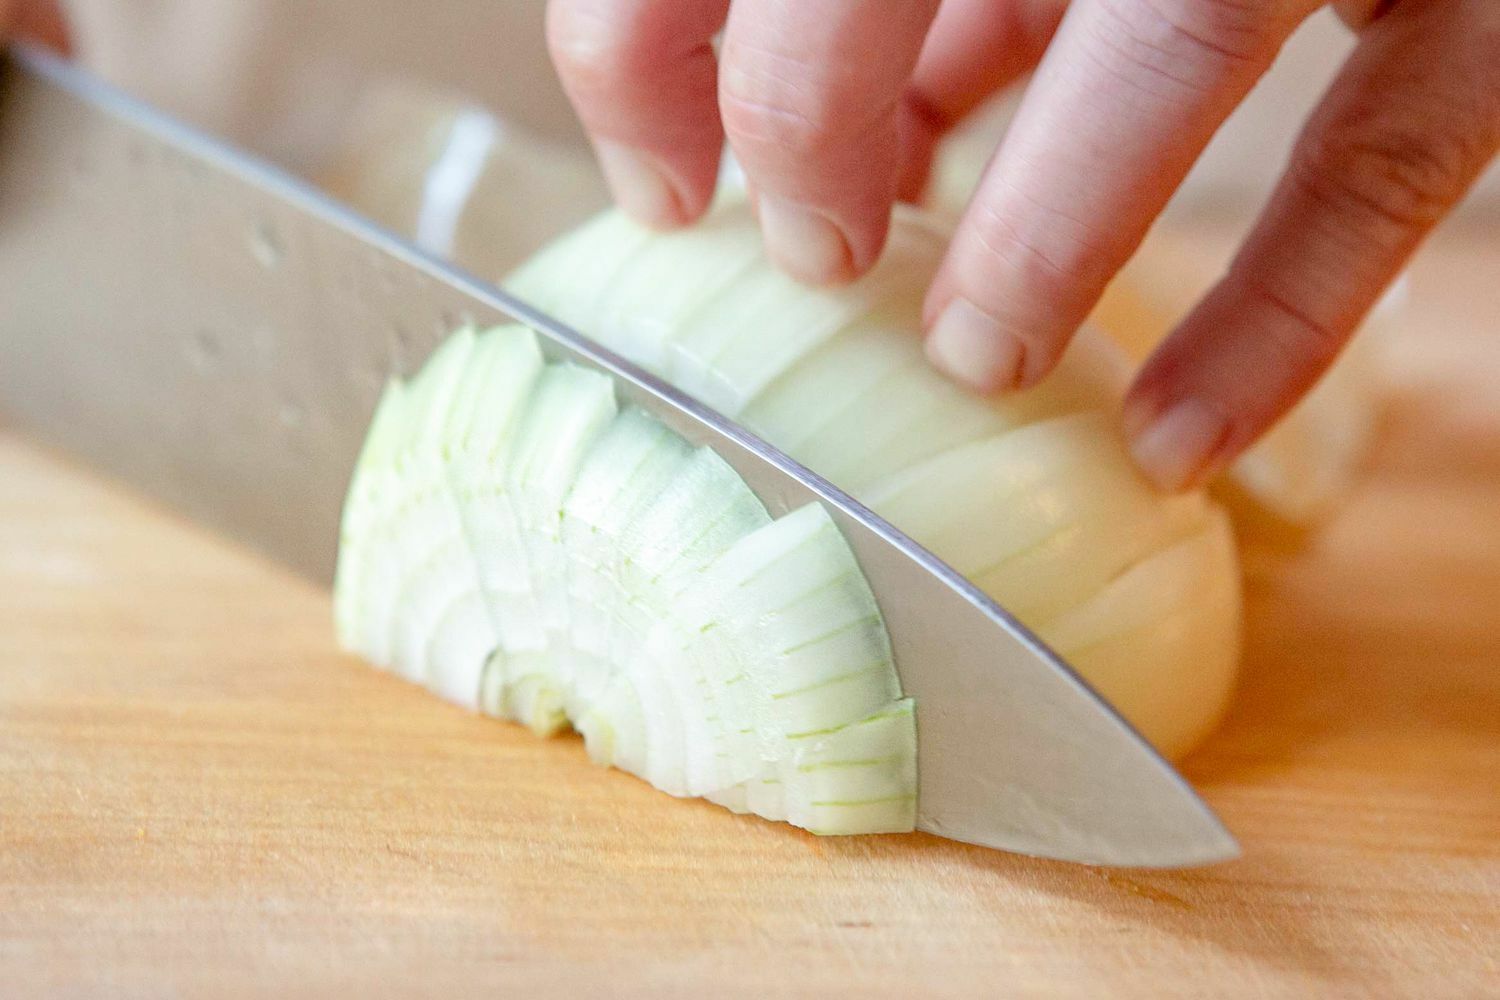 Нарежьте этот овощ и приложите к месту укуса мошки. Облегчит боль за 5 минут